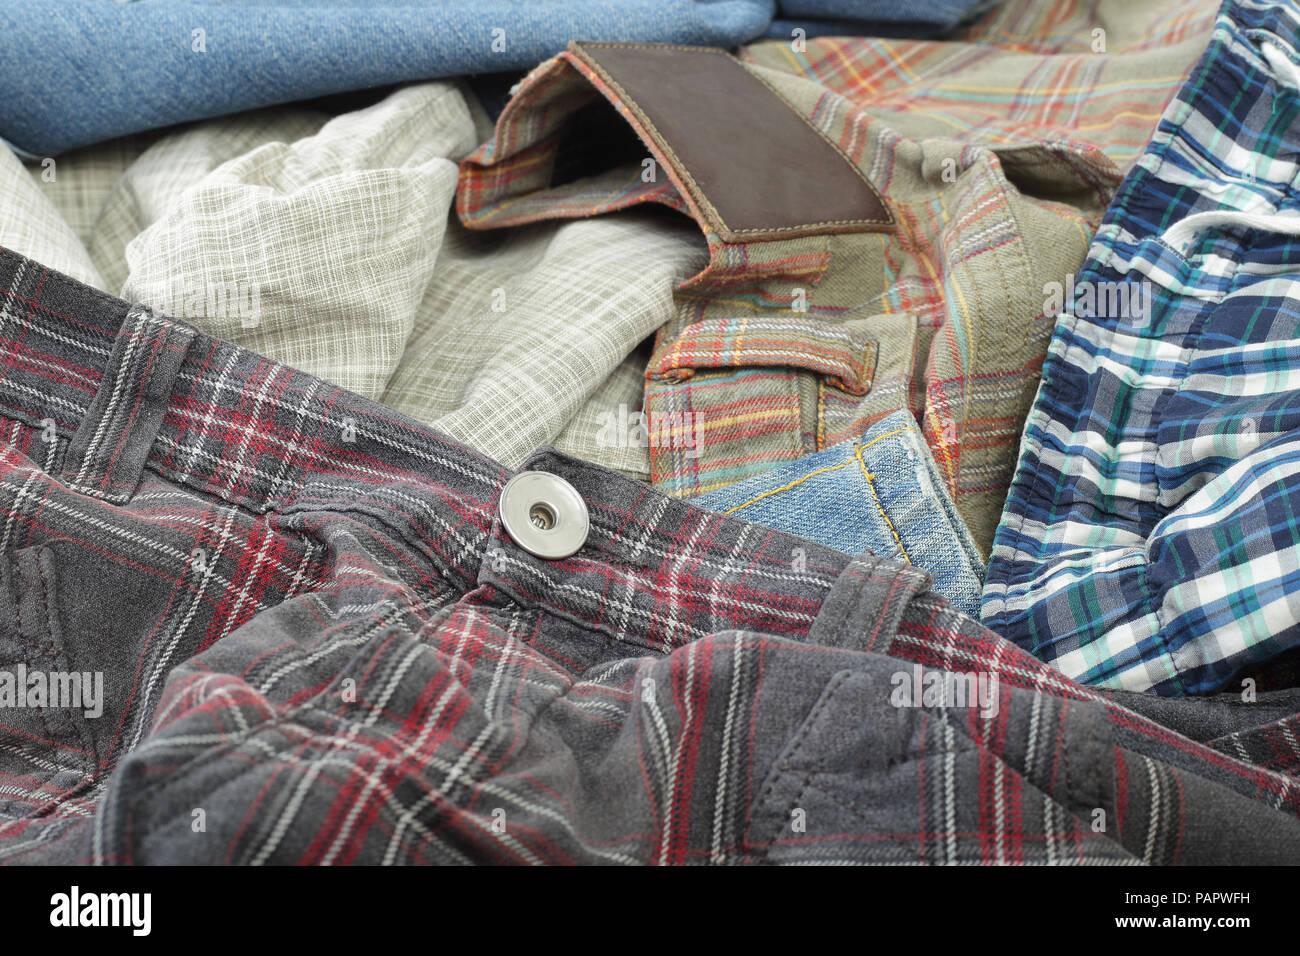 Vêtements, chaussures et accessoires - Top view sale tas fond jeans colorés Banque D'Images